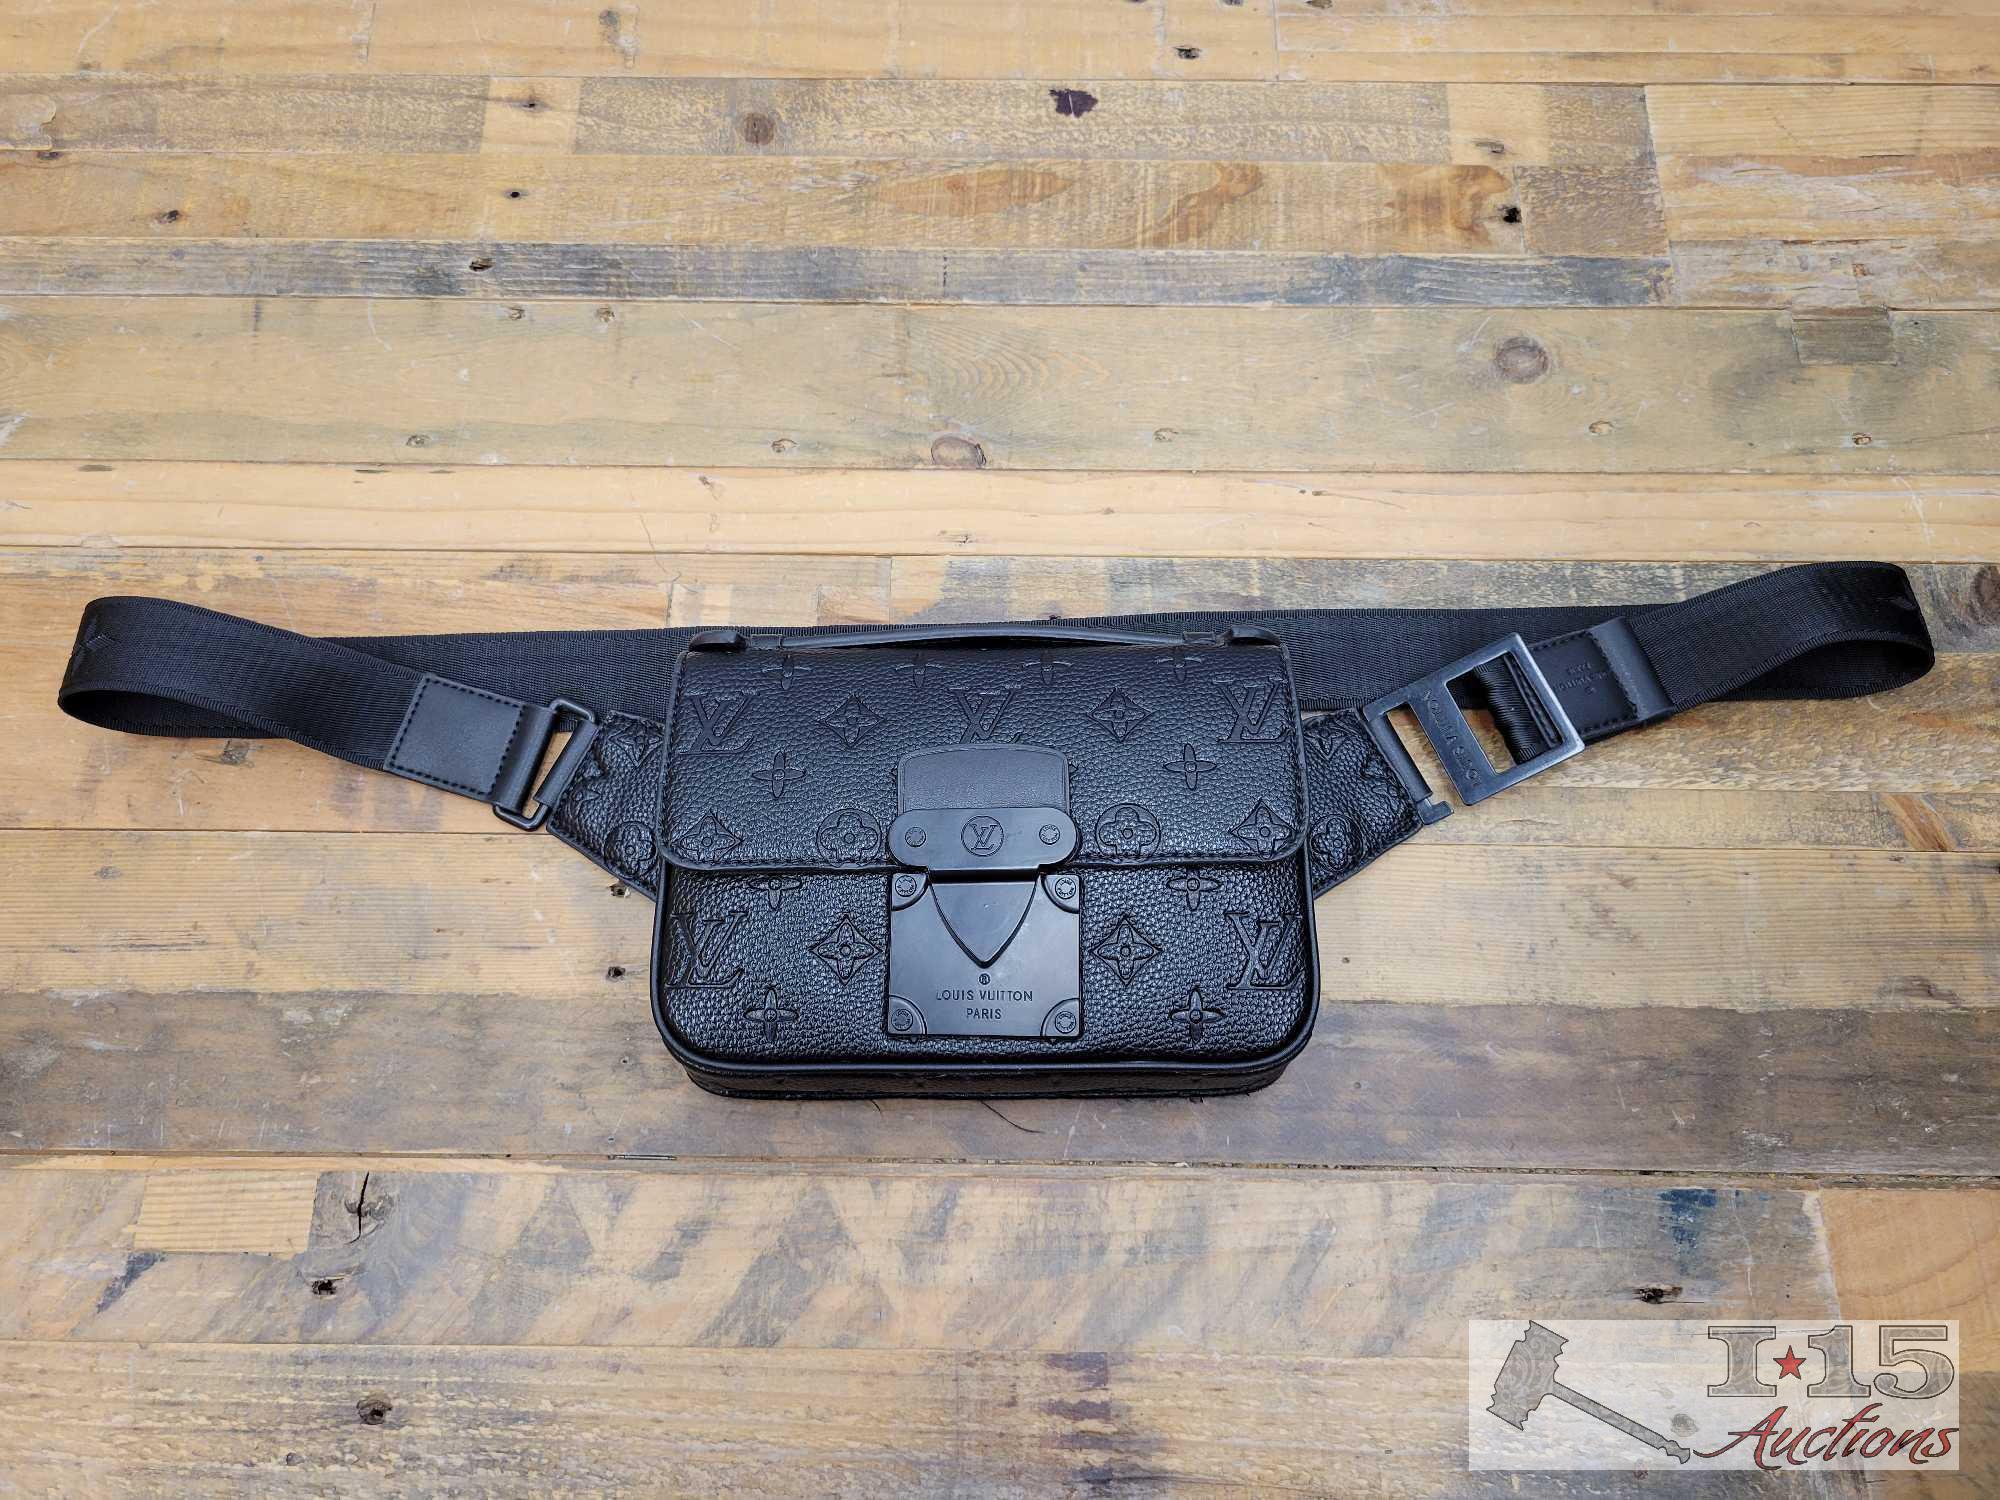 Louis Vuitton Monogram Fanny Pack / Waist Belt Bag sold at auction